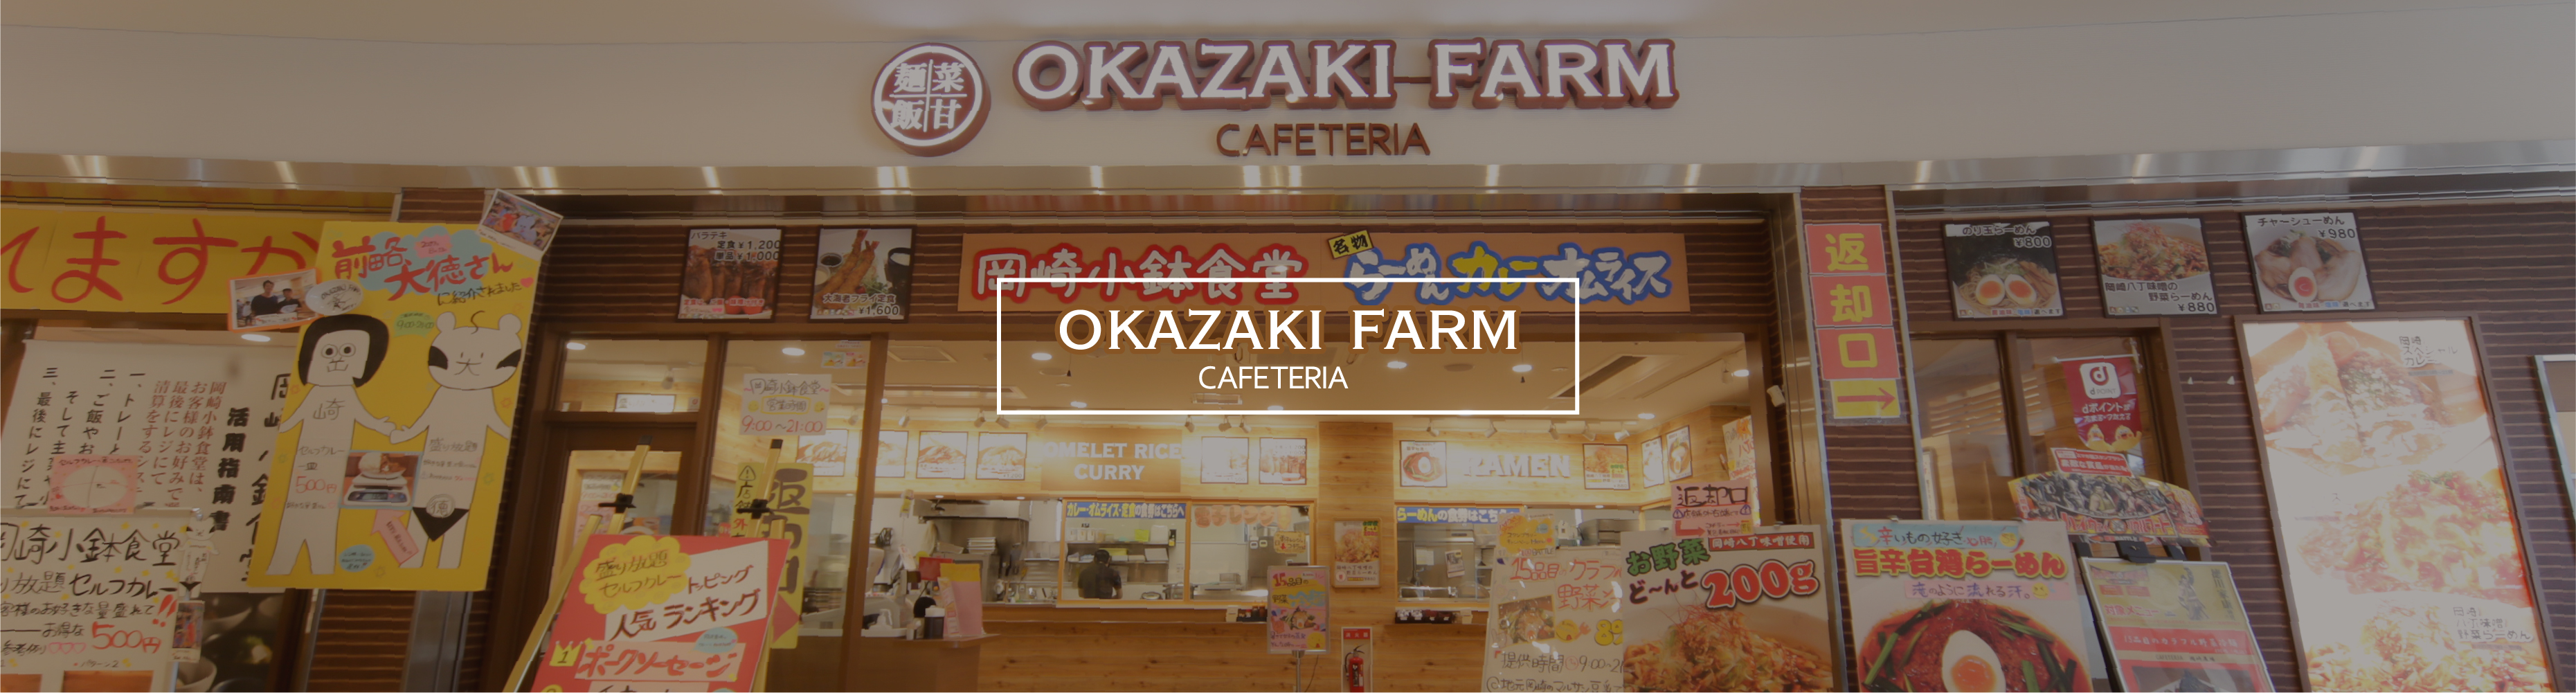 CAFETERIA Okazaki Farm